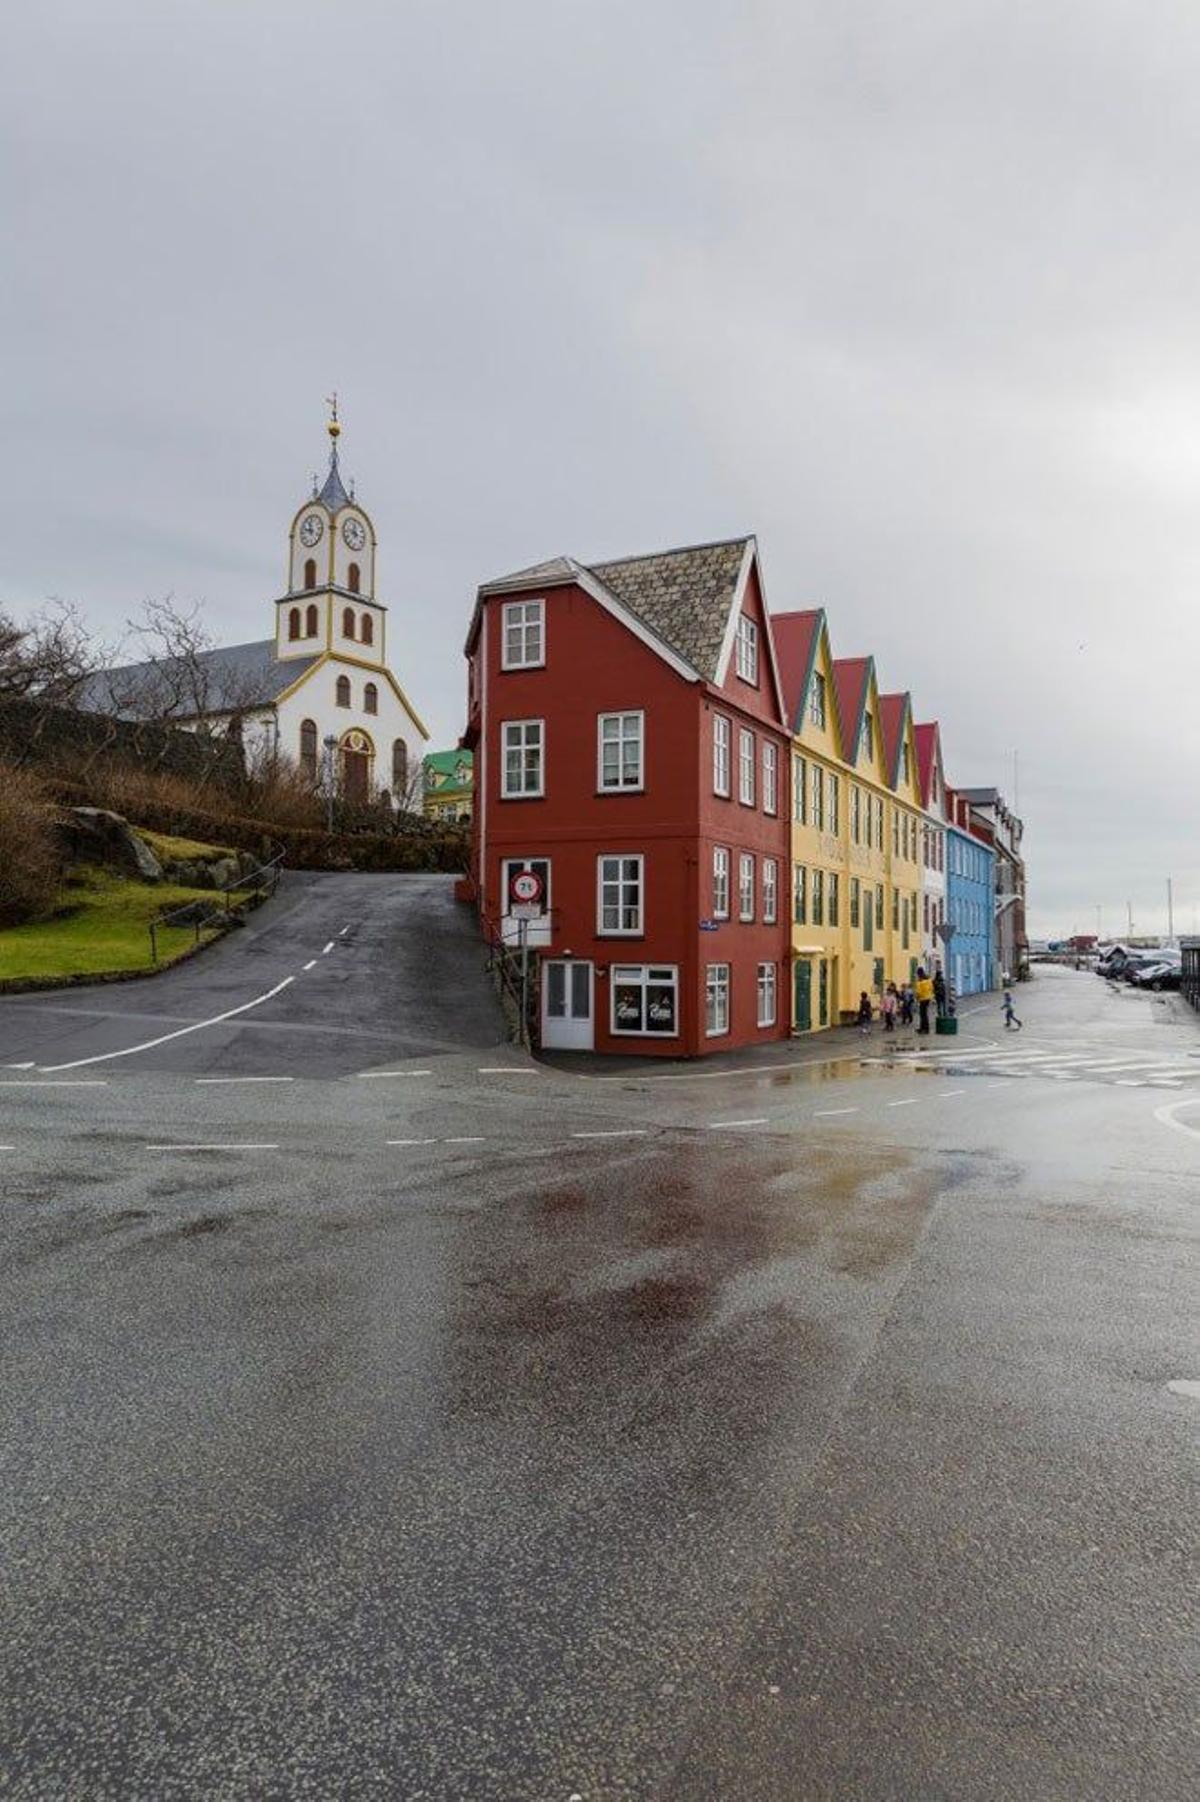 Casas de estilo típico danés en Torshavn.